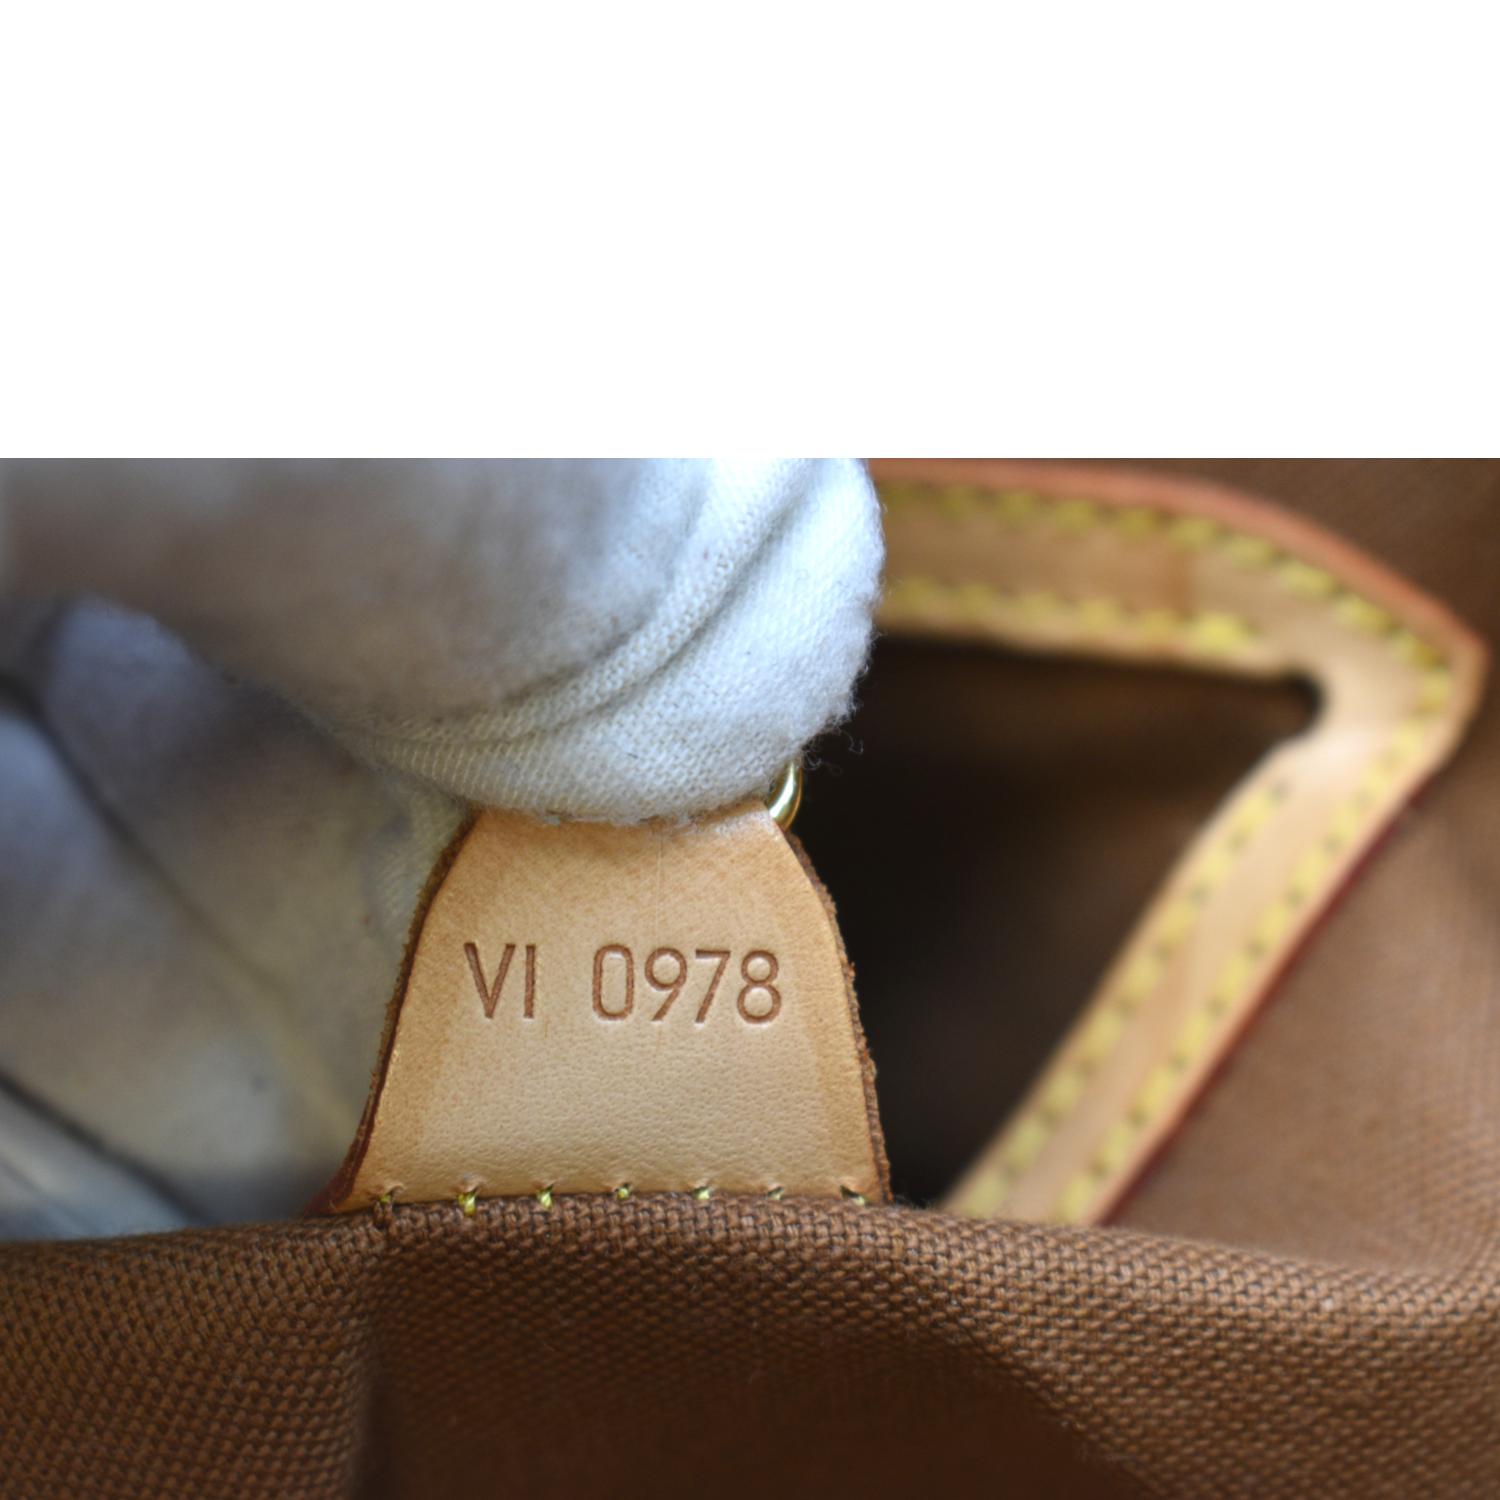 Louis Vuitton Ellipse Brown Canvas Shoulder Bag (Pre-Owned)